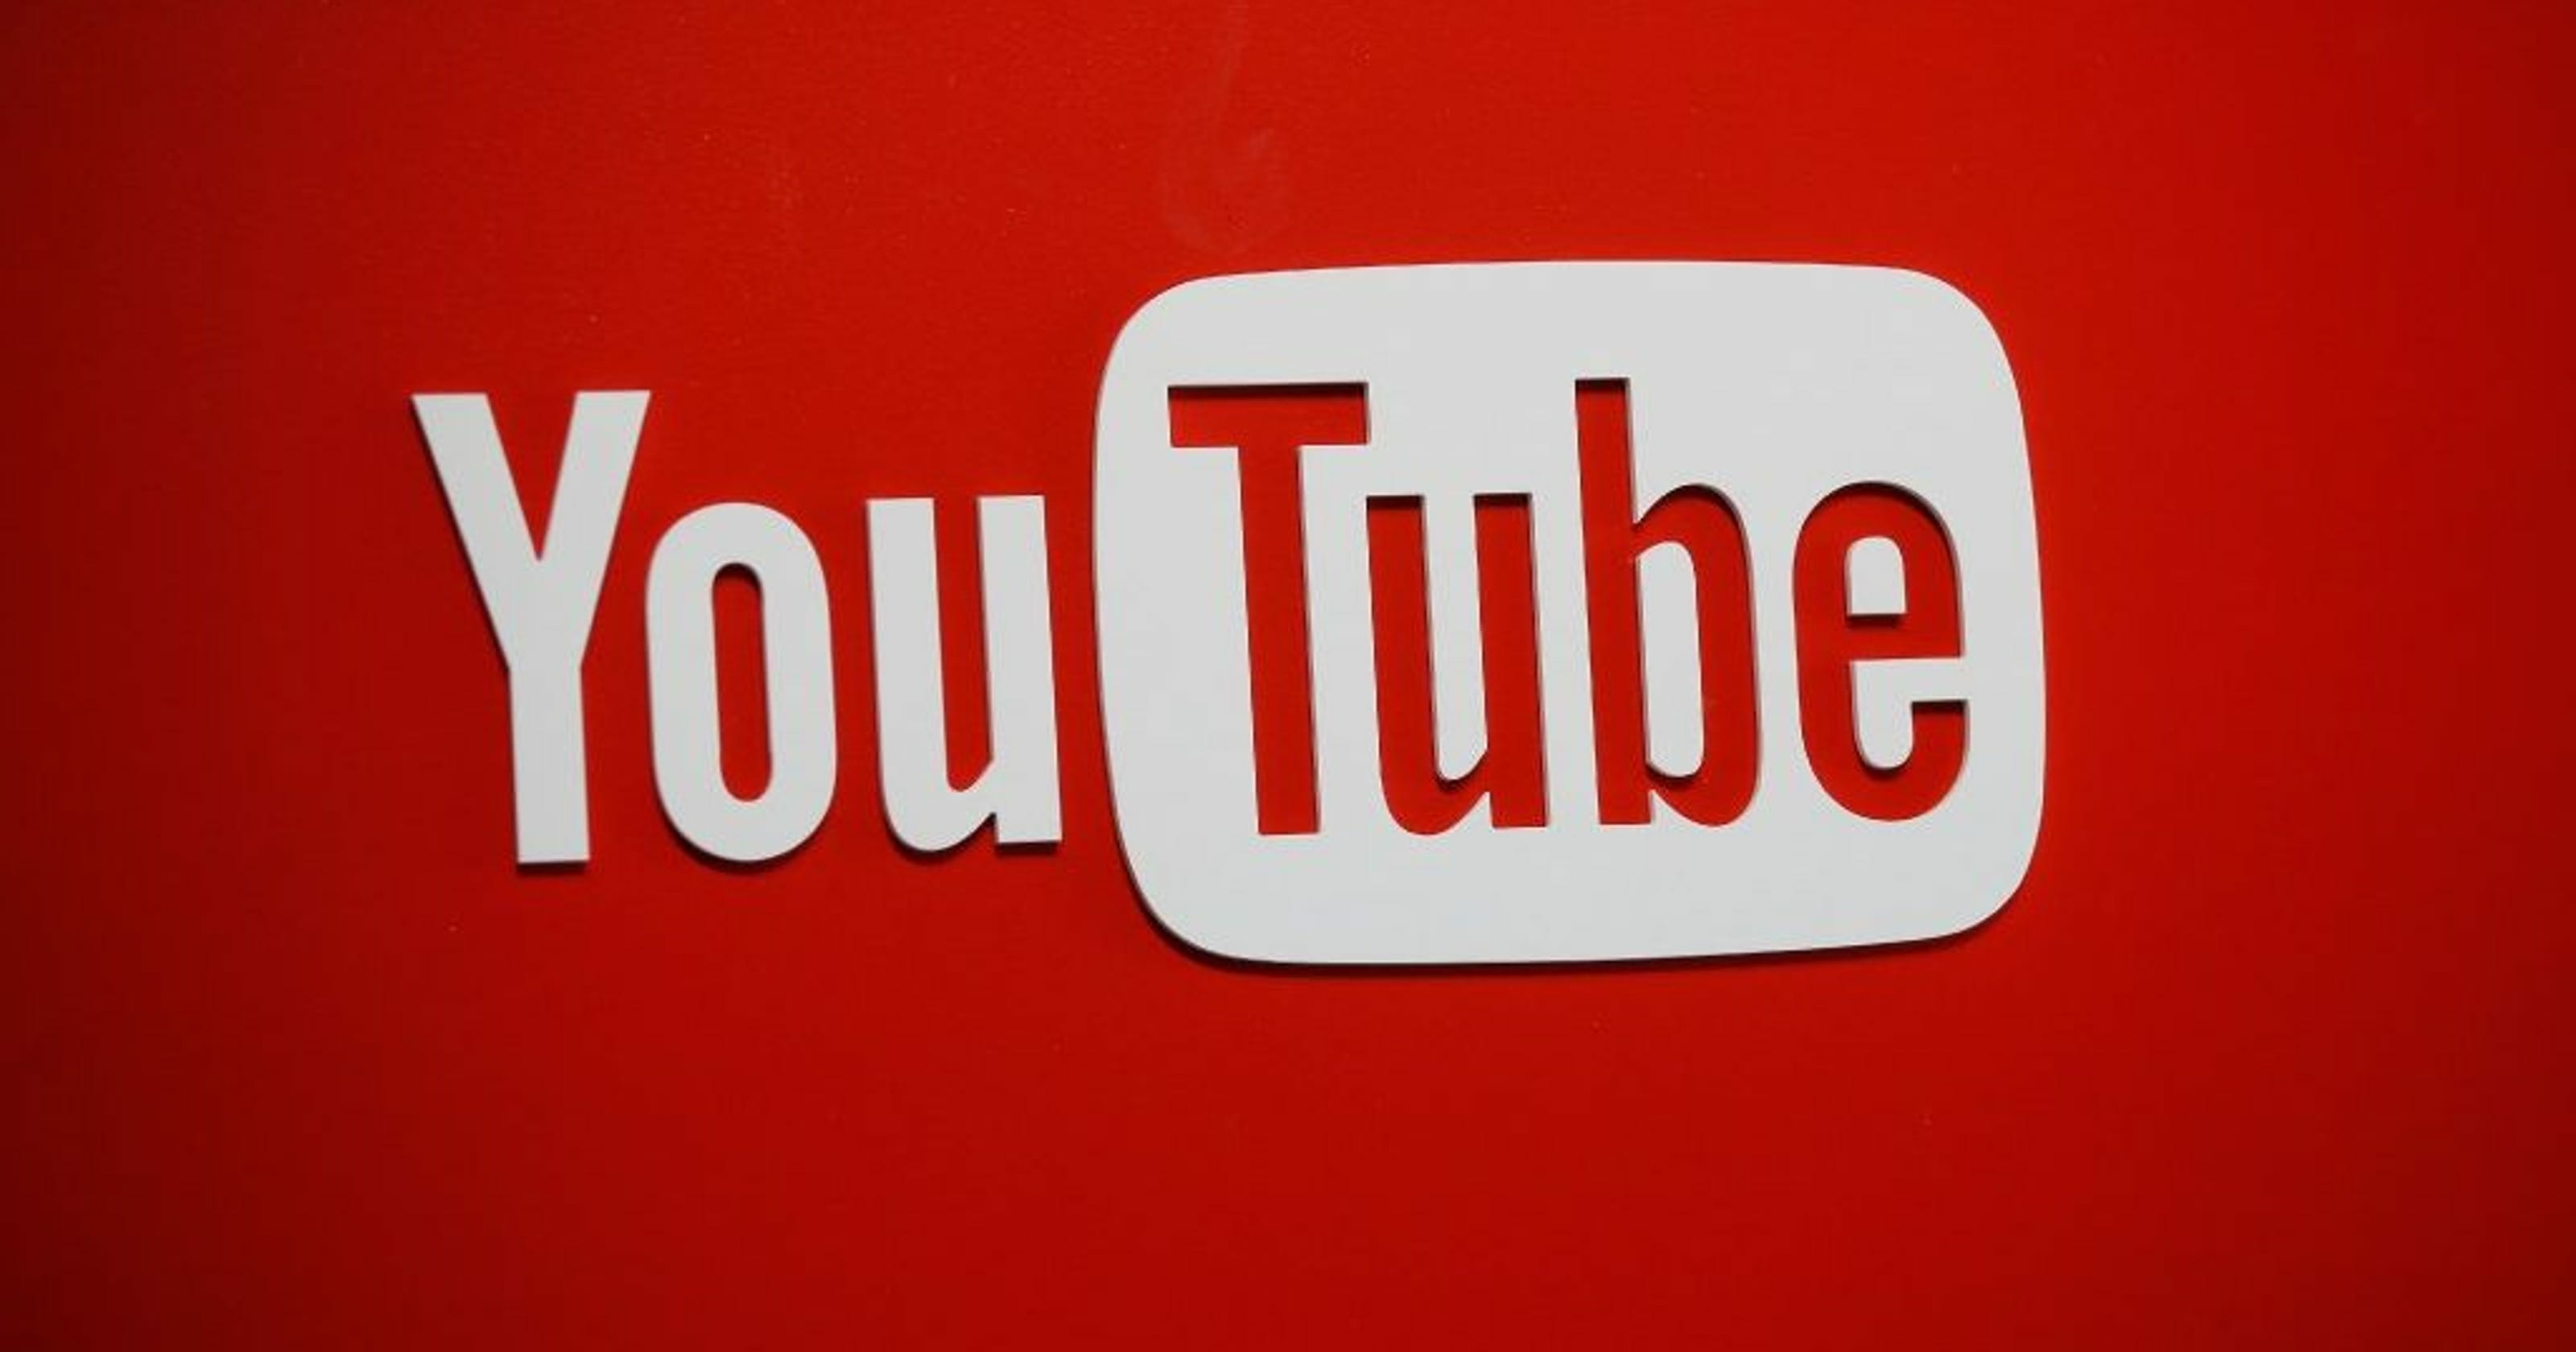 الرئيس التنفيذي لشركة YouTube: "كونك منصة مفتوحة يعني أحيانًا ترك محتوى مثير للجدل أو مسيءًا"